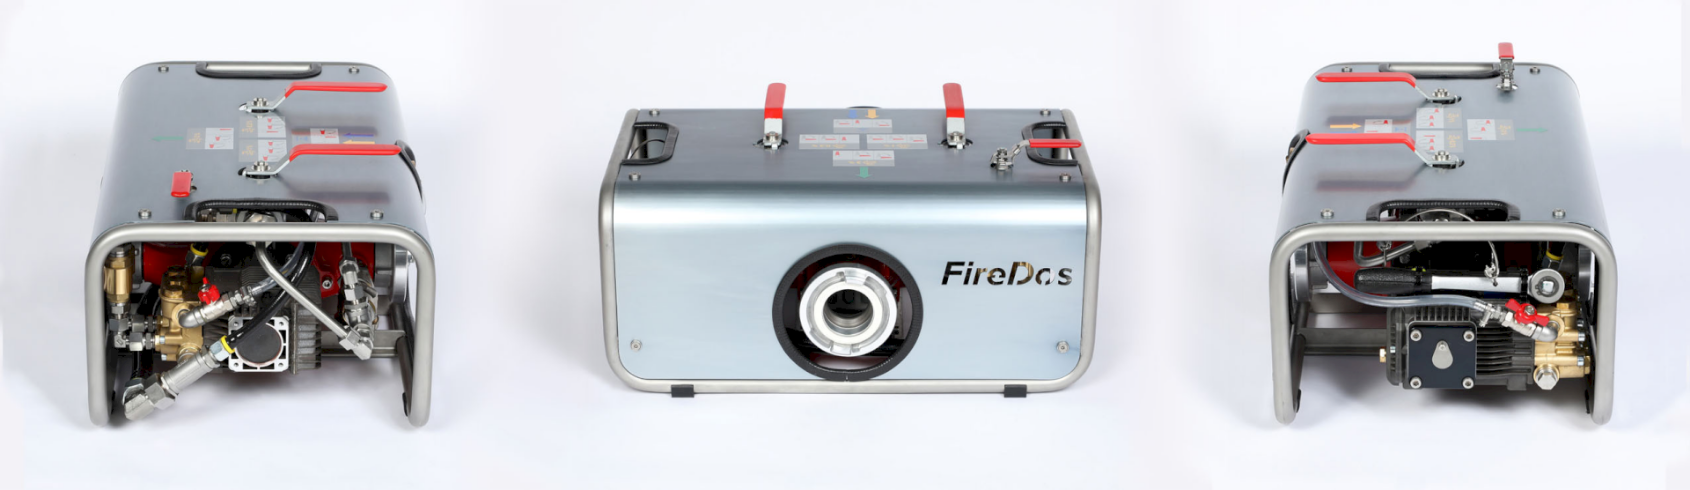 Mobilní přiměšovač FireDos DZ1000